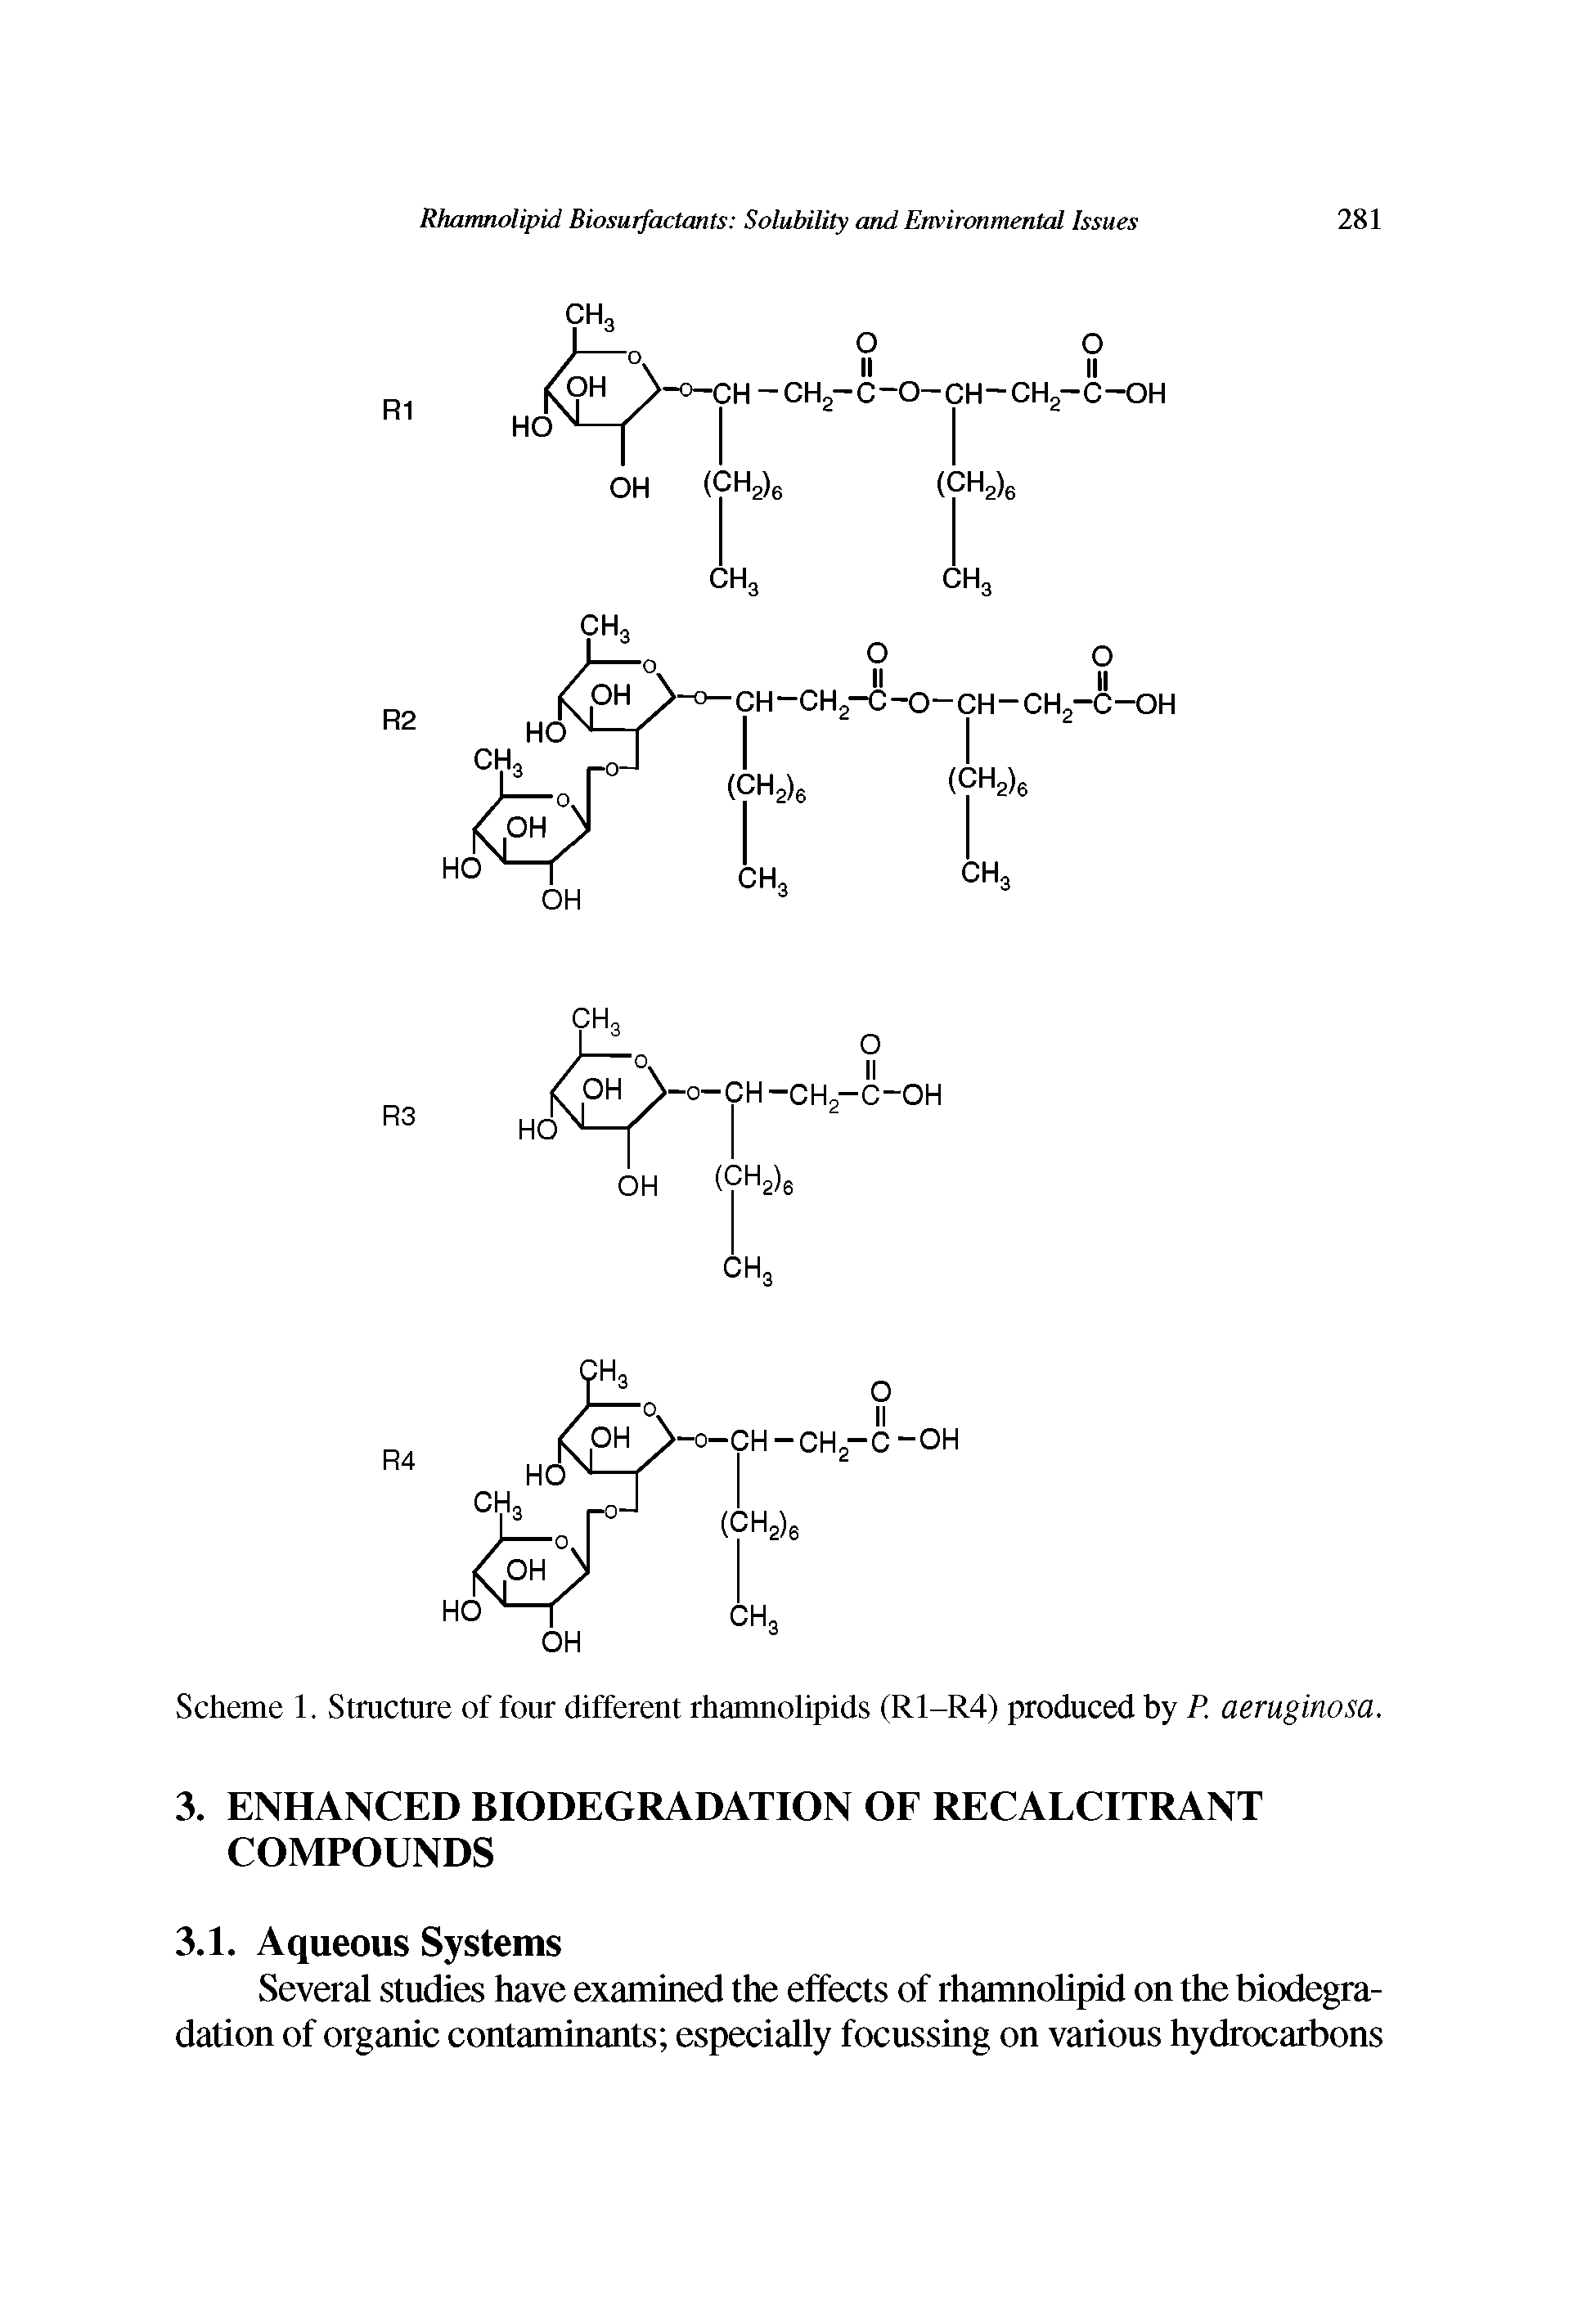 Scheme 1. Structure of four different rhamnolipids (R1-R4) produced by P. aeruginosa.